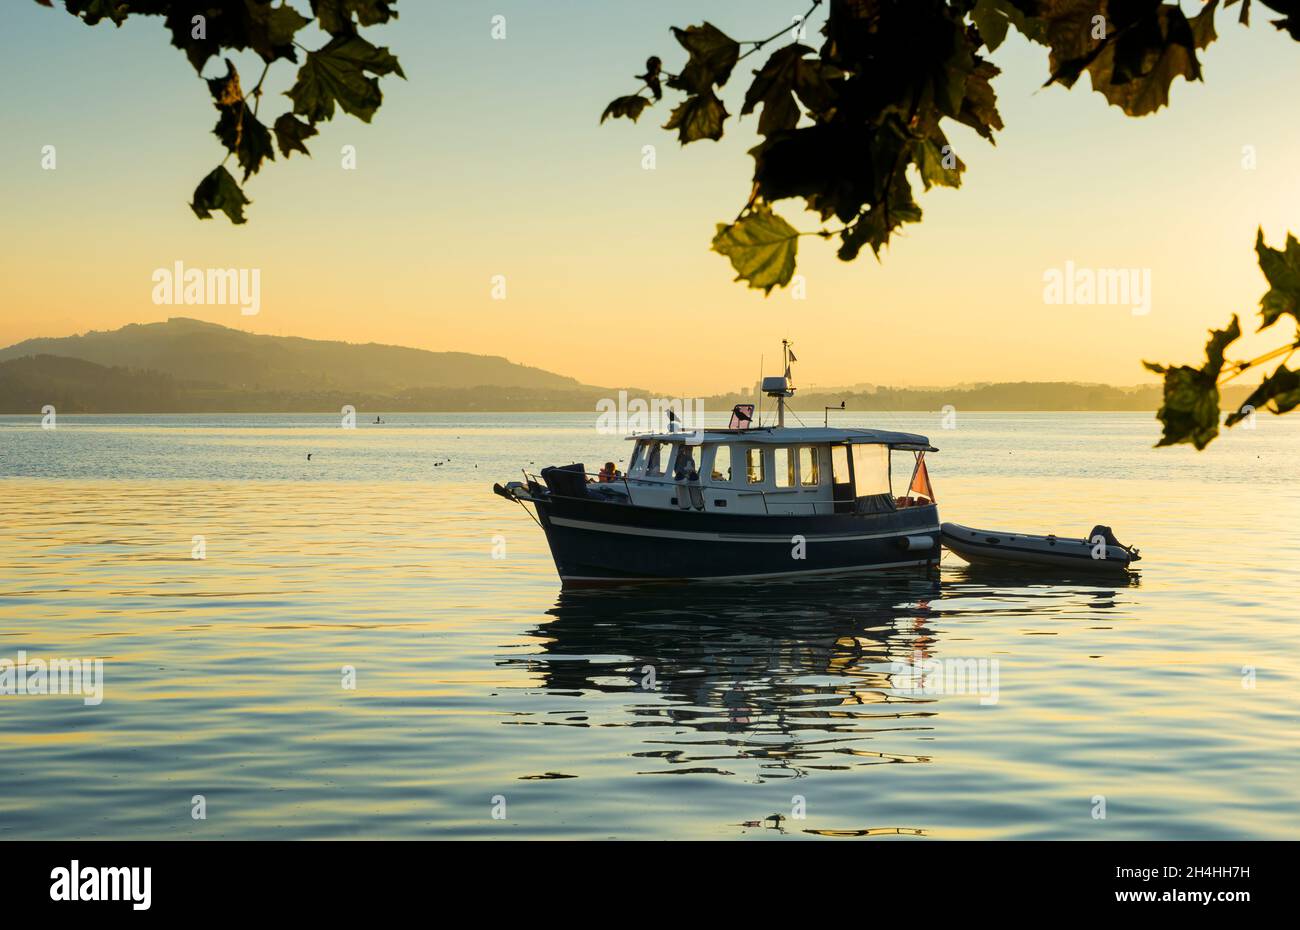 Petit bateau de plaisance sur un lac calme au coucher du soleil, reflétant les tons dorés de la lumière du soleil.Concept de loisirs et de tranquillité. Banque D'Images